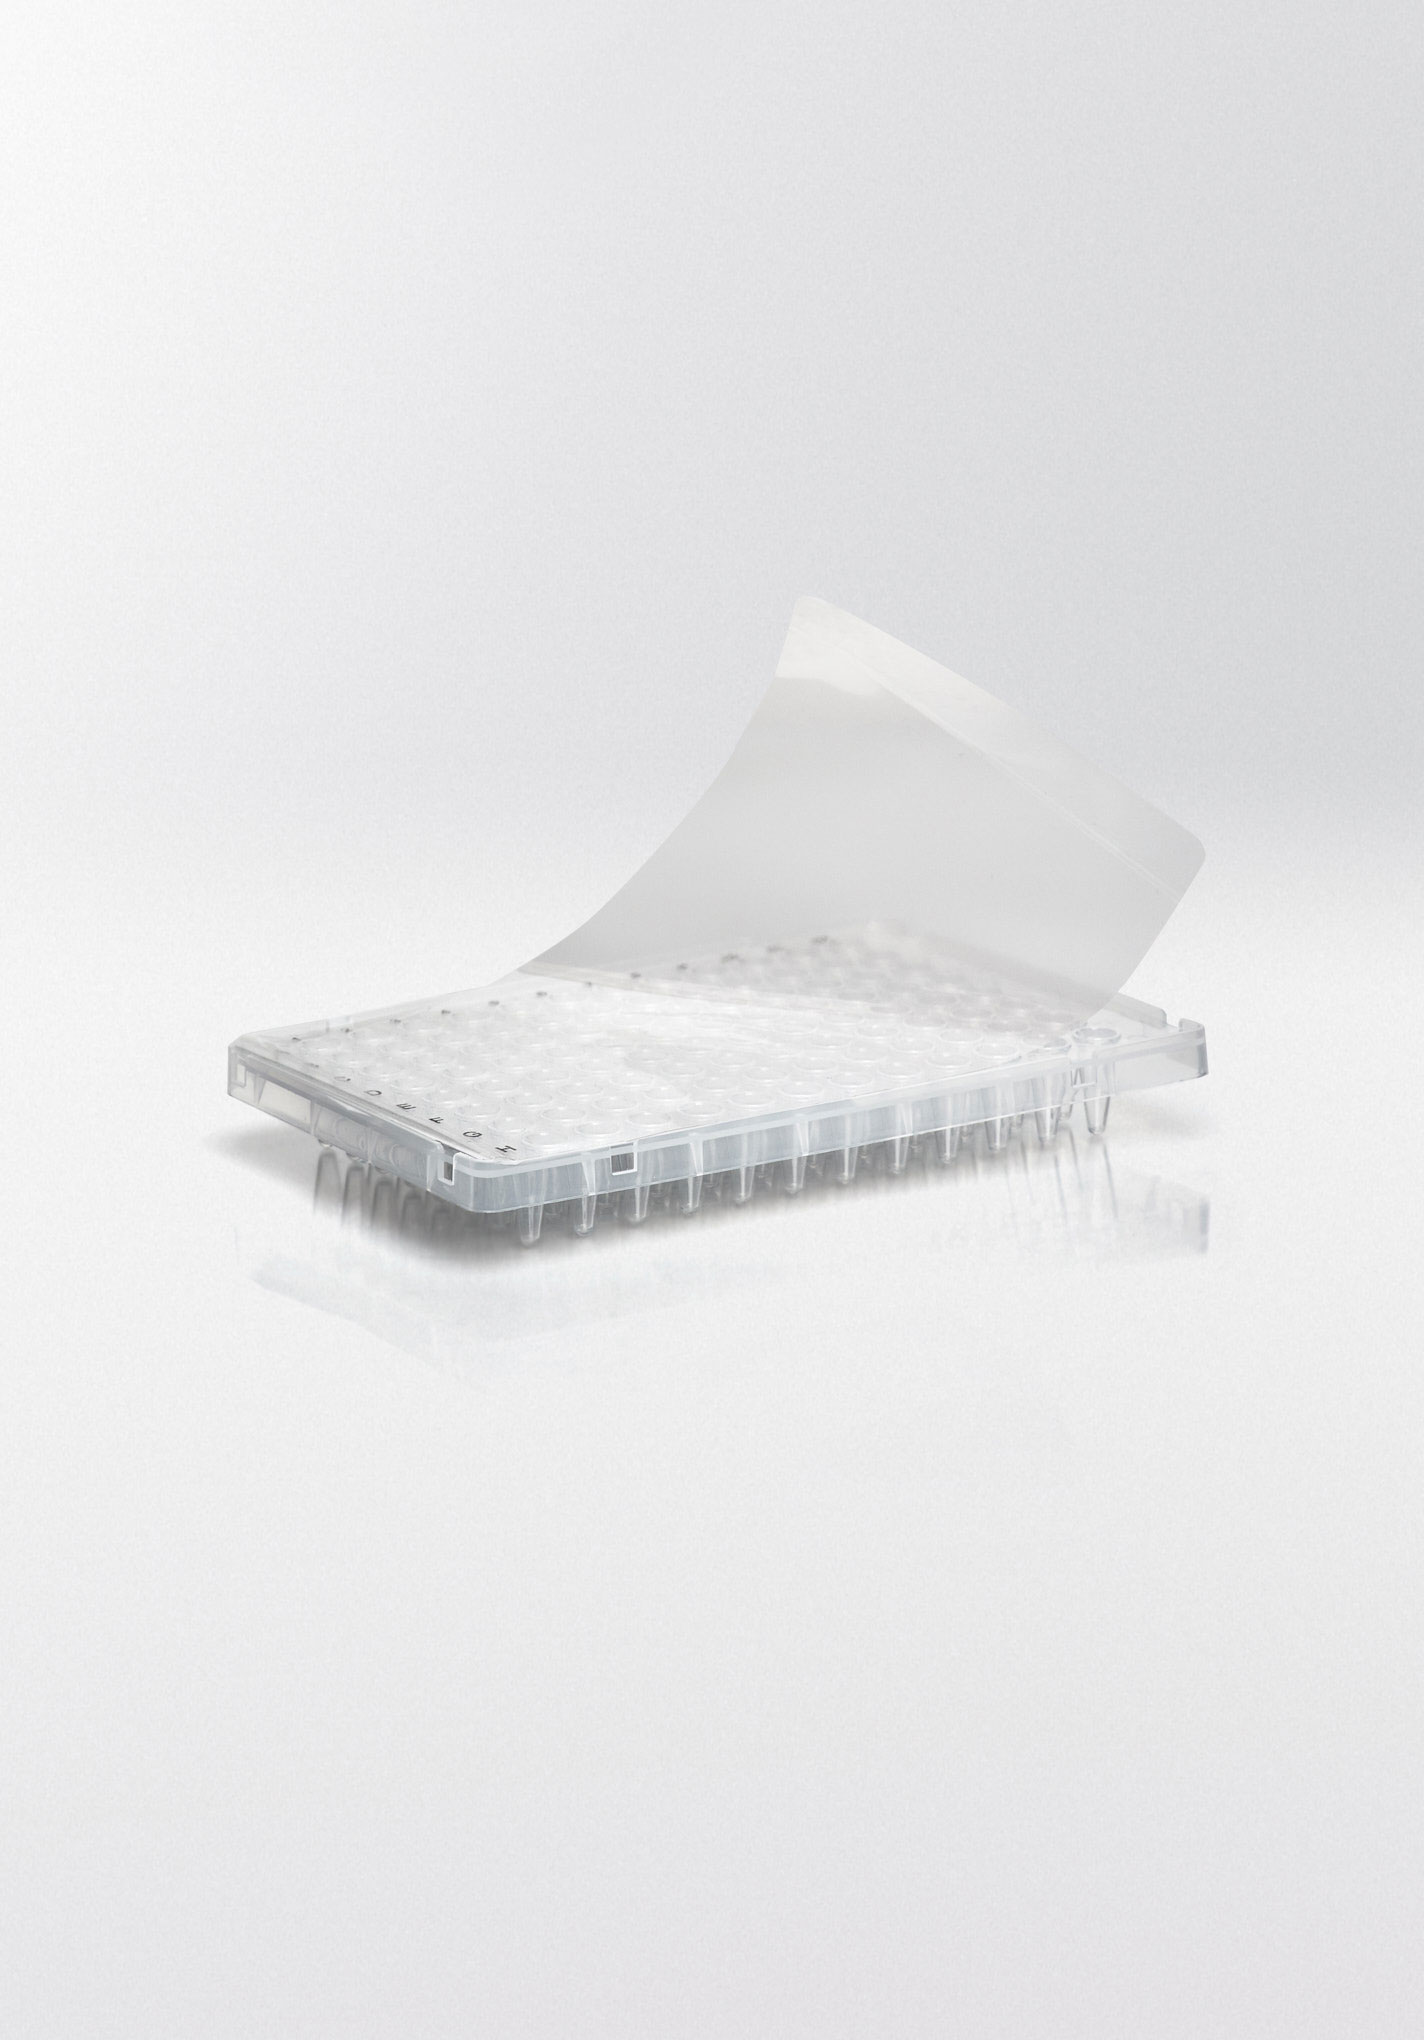 Alfombrillas selladoras adhesivas. NERBE-PLUS. Descripción: Alfombrilla selladora adhesiva perforable para ELISA/EIA. Material: Polietileno. Grosor (µm): 50. Rango Temp. (ºC): -40 a 120. Esterilidad: PCR Ready.